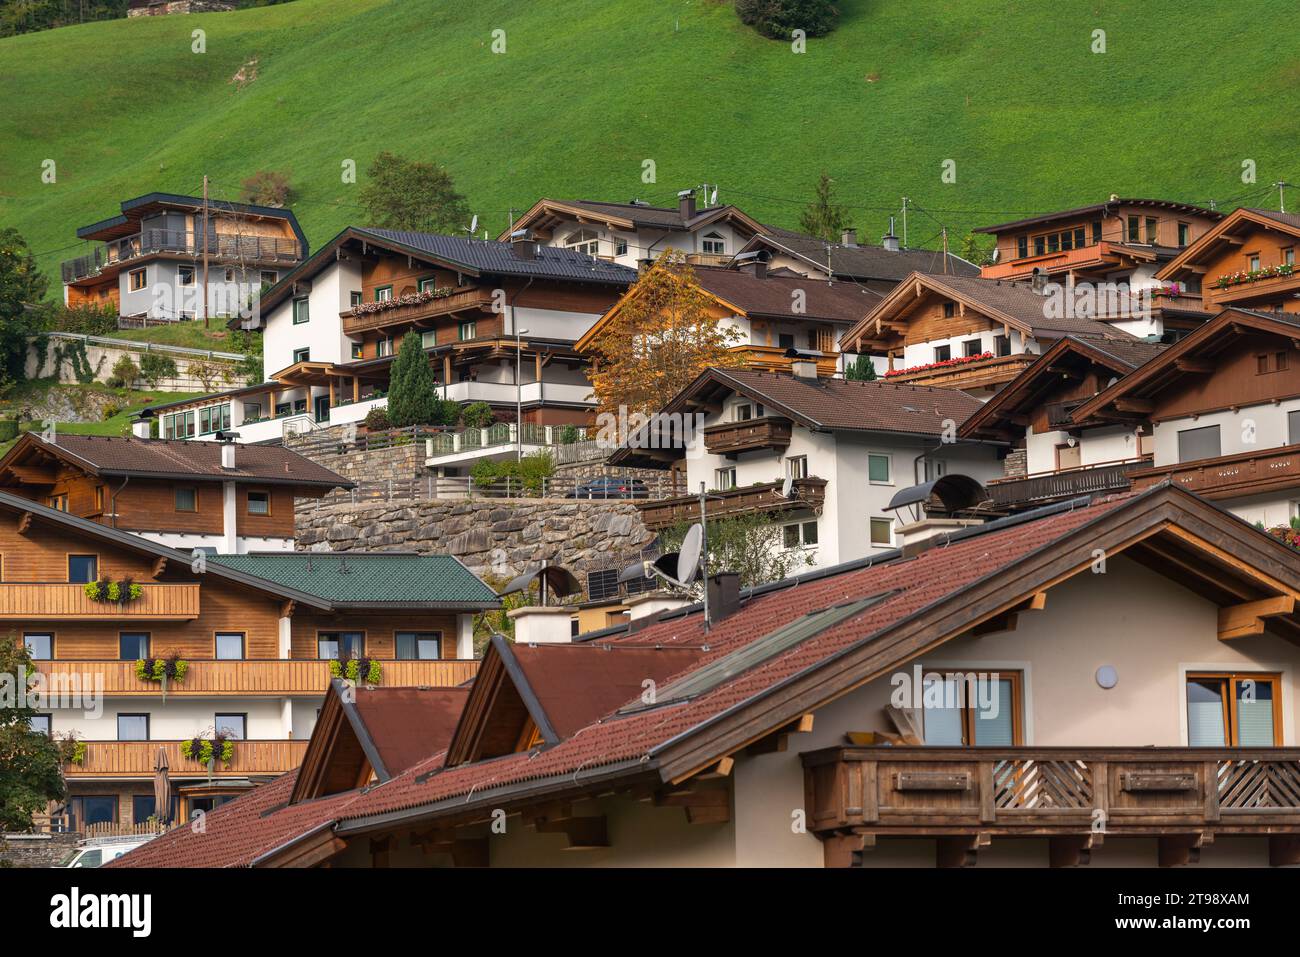 Maisons tyroliennes avec balcons en bois et pignons dans la communauté Finkenberg, Tuxer Tal, Tux, Tyrol, Zillertaler Alpes, Ausrtria Banque D'Images